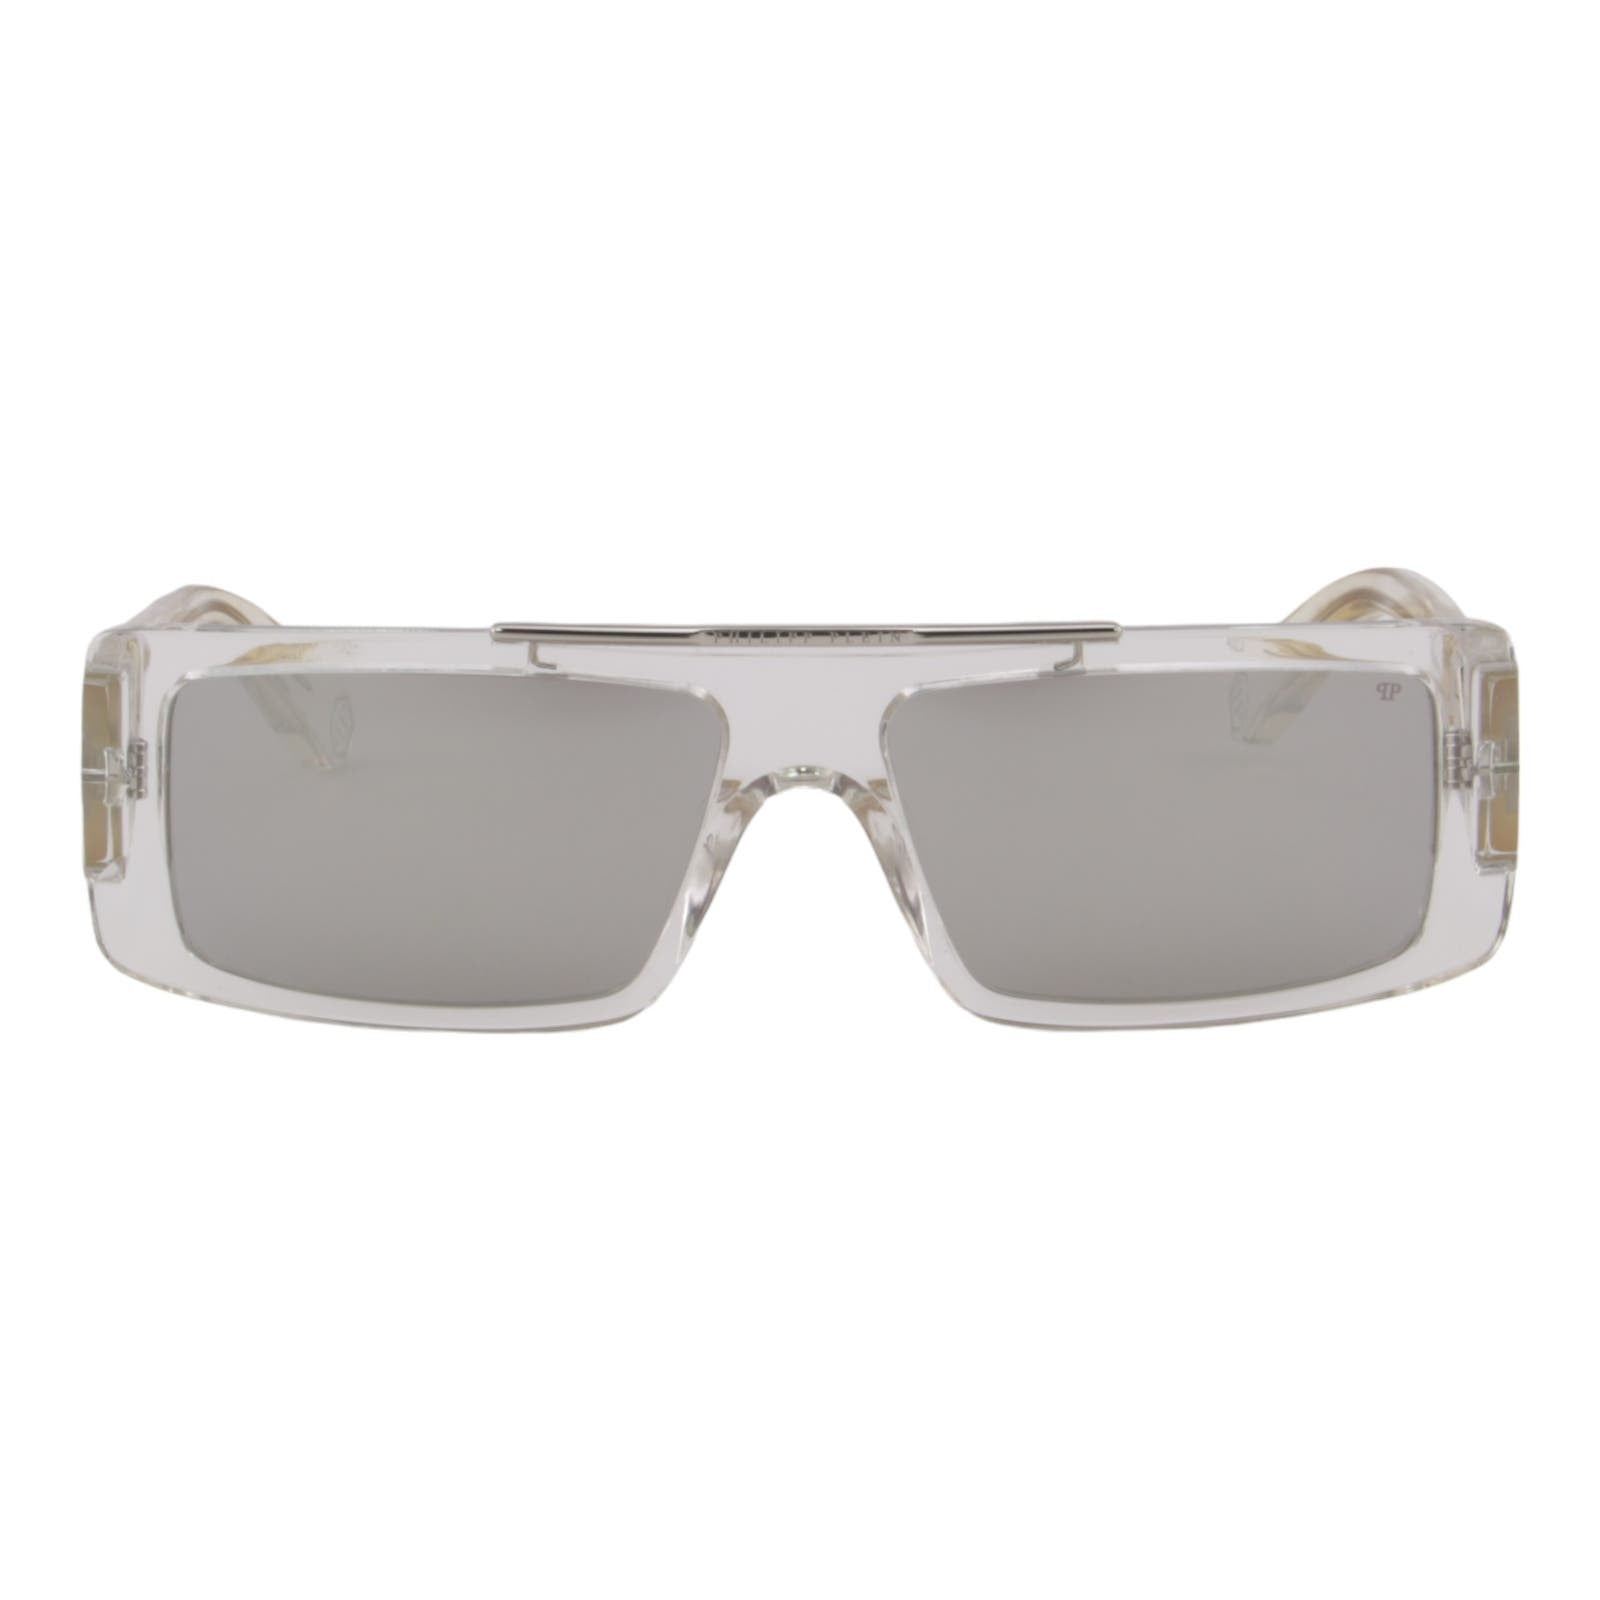 Designer Men Slim Rectangular Sunglasses SPP003V-880X Mirrored Lens